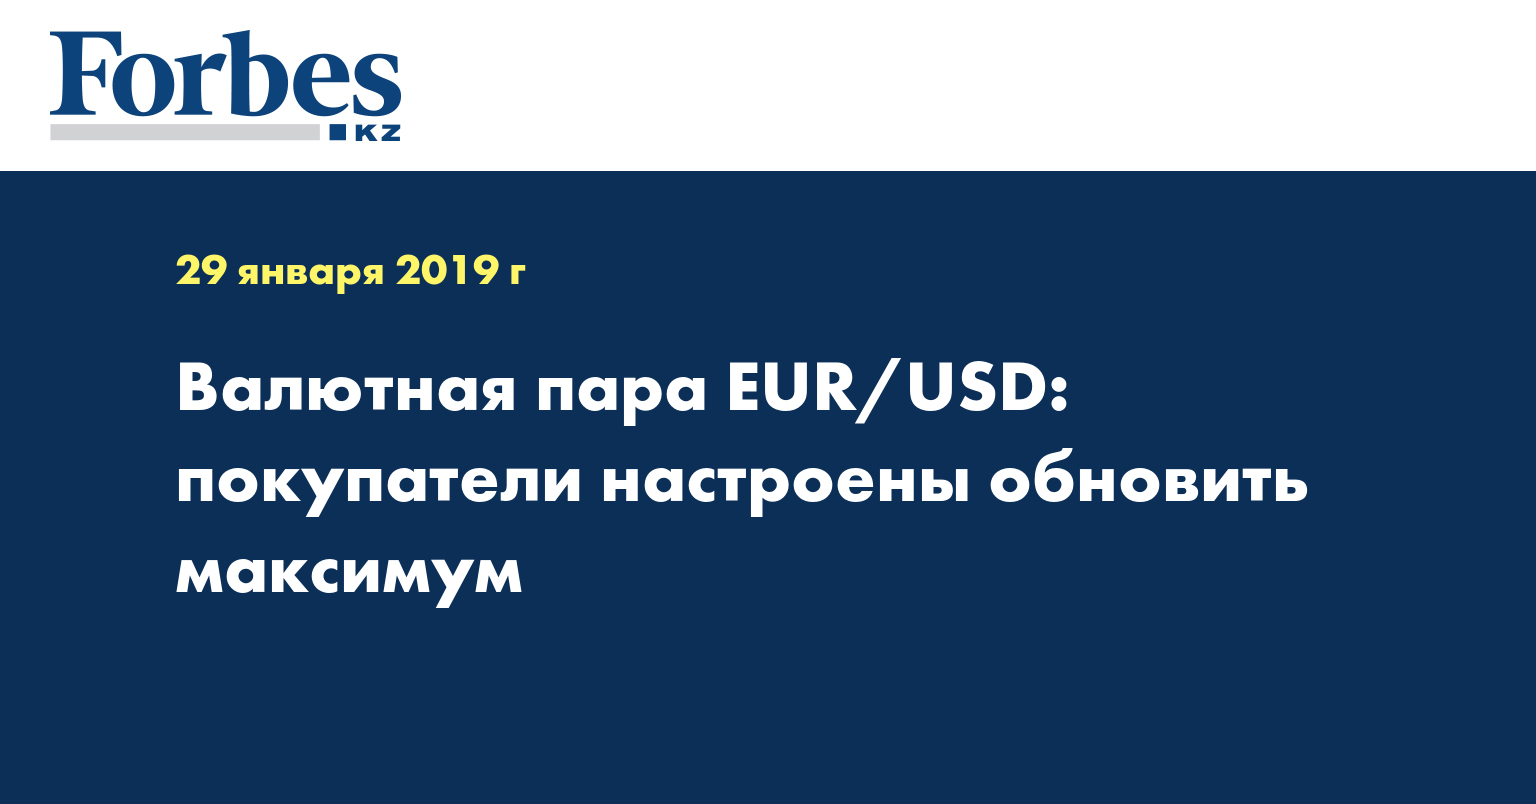 Валютная пара EUR/USD: покупатели настроены обновить максимум